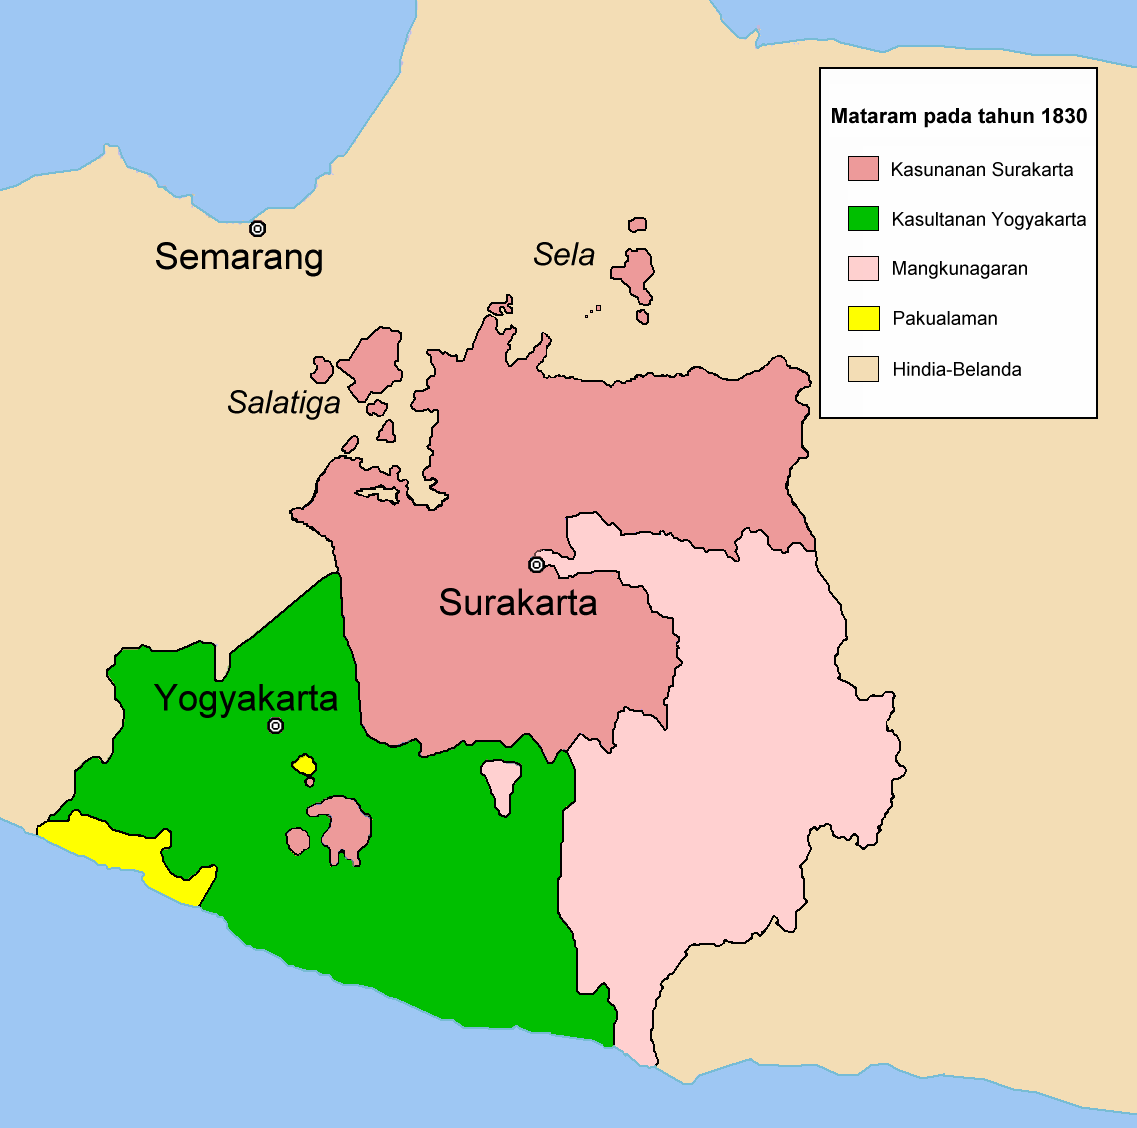 Sejarah Lengkap Kerajaan Mataram Islam (Kesultanan Mataram 